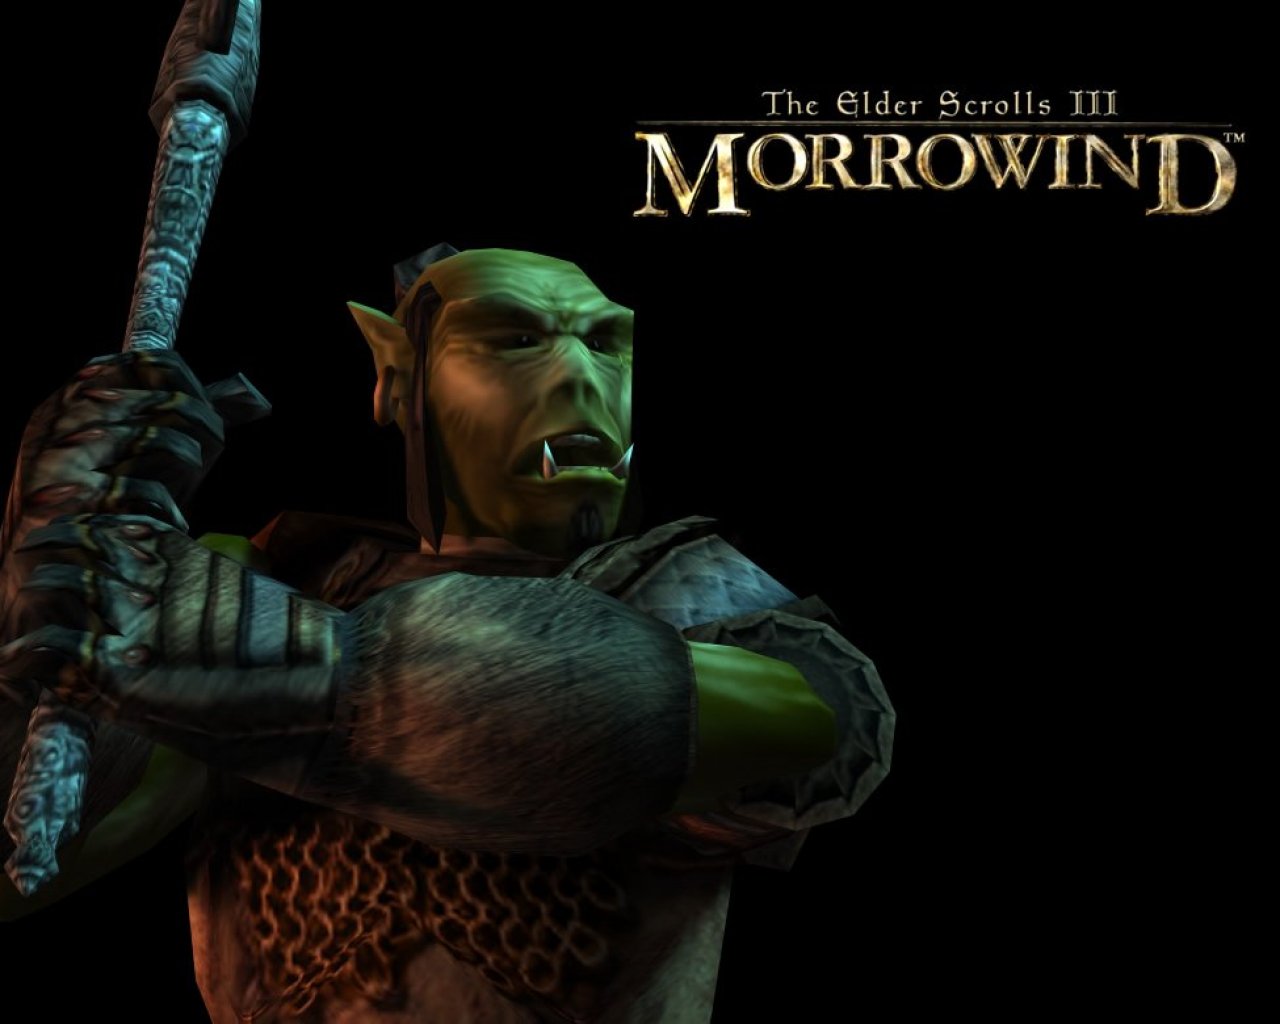 Wallpaper The Elder Scrolls III: Morrowind "Orsimer"